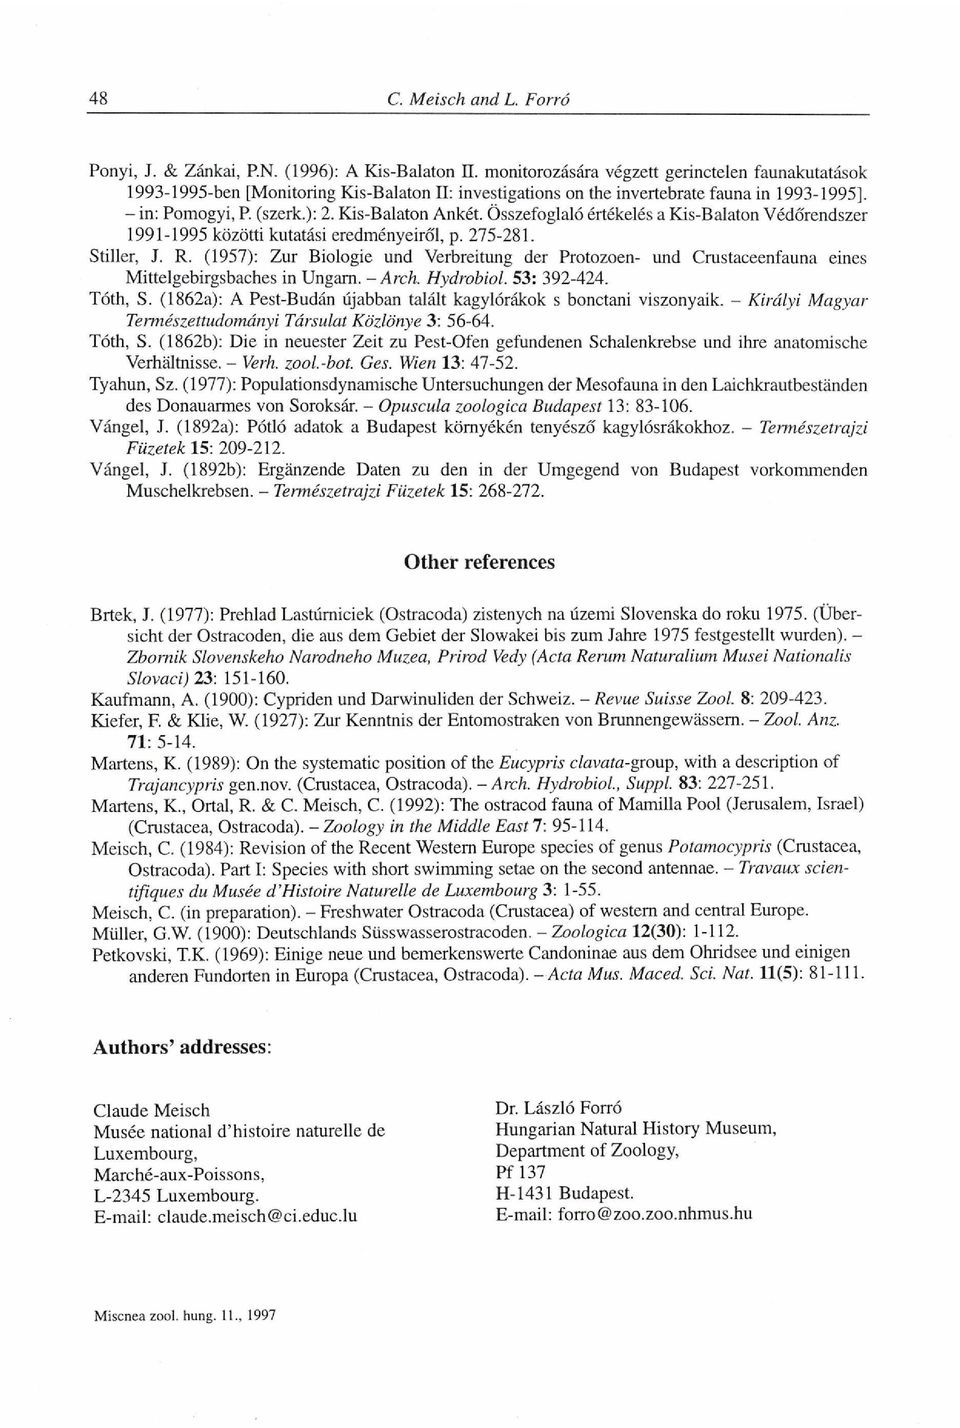 (1957): Zur Biologie und Verbreitung der Protozoen- und Crustaceenfauna eines Mittelgebirgsbaches in Ungarn. - Arch. Hydrobiol. 53: 392-424. Tóth, S.